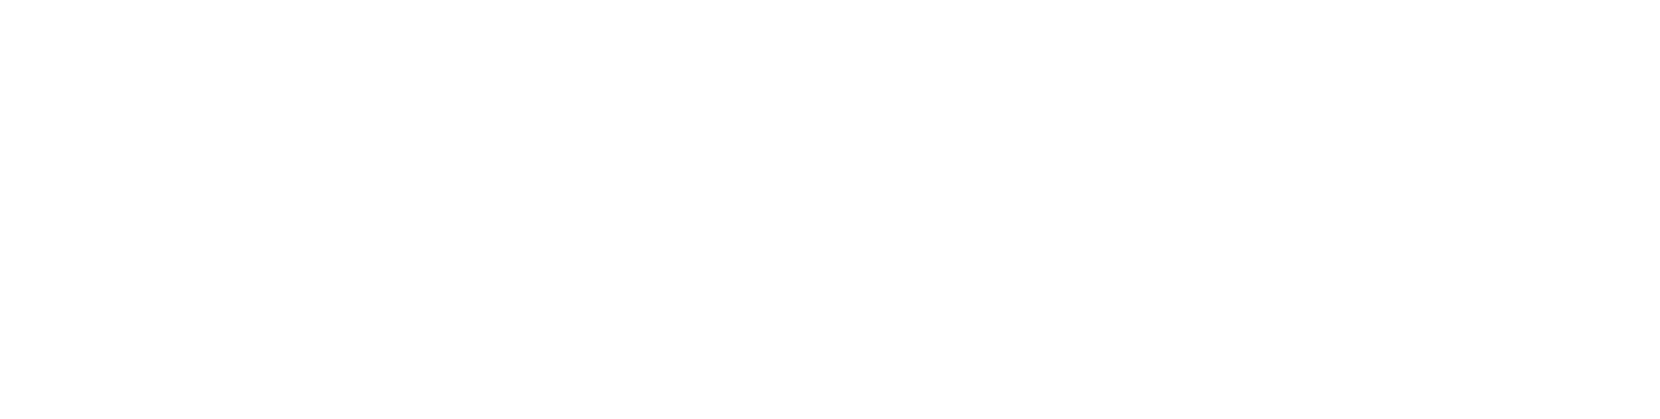 image-catchers-logo